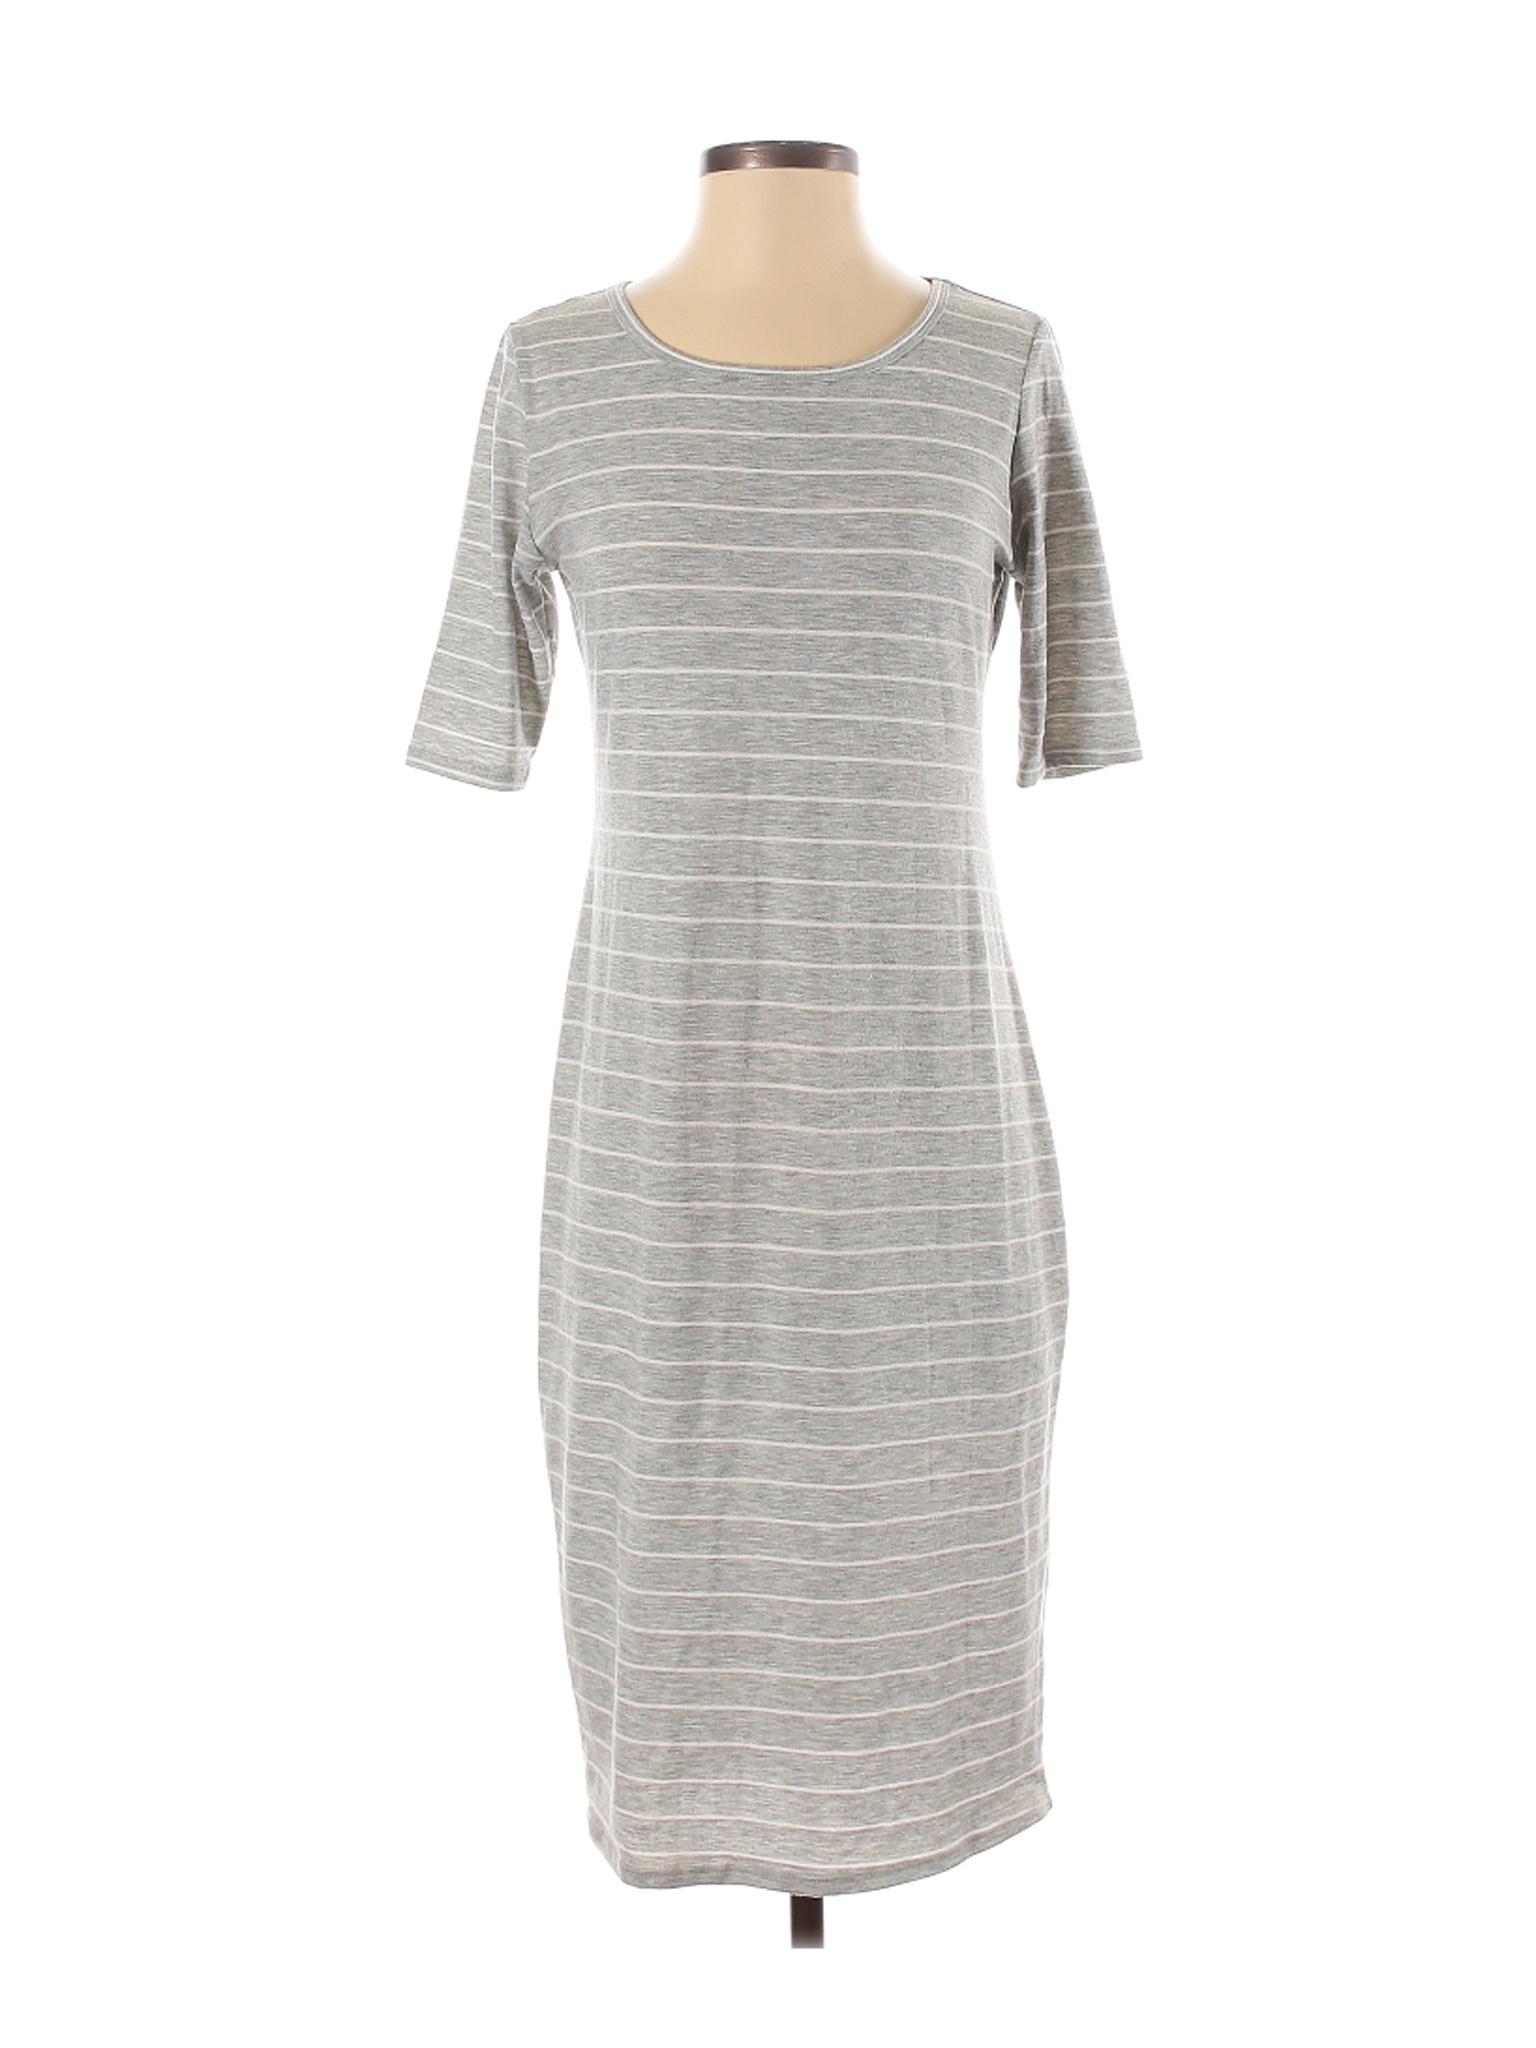 Lularoe Women Gray Casual Dress S | eBay